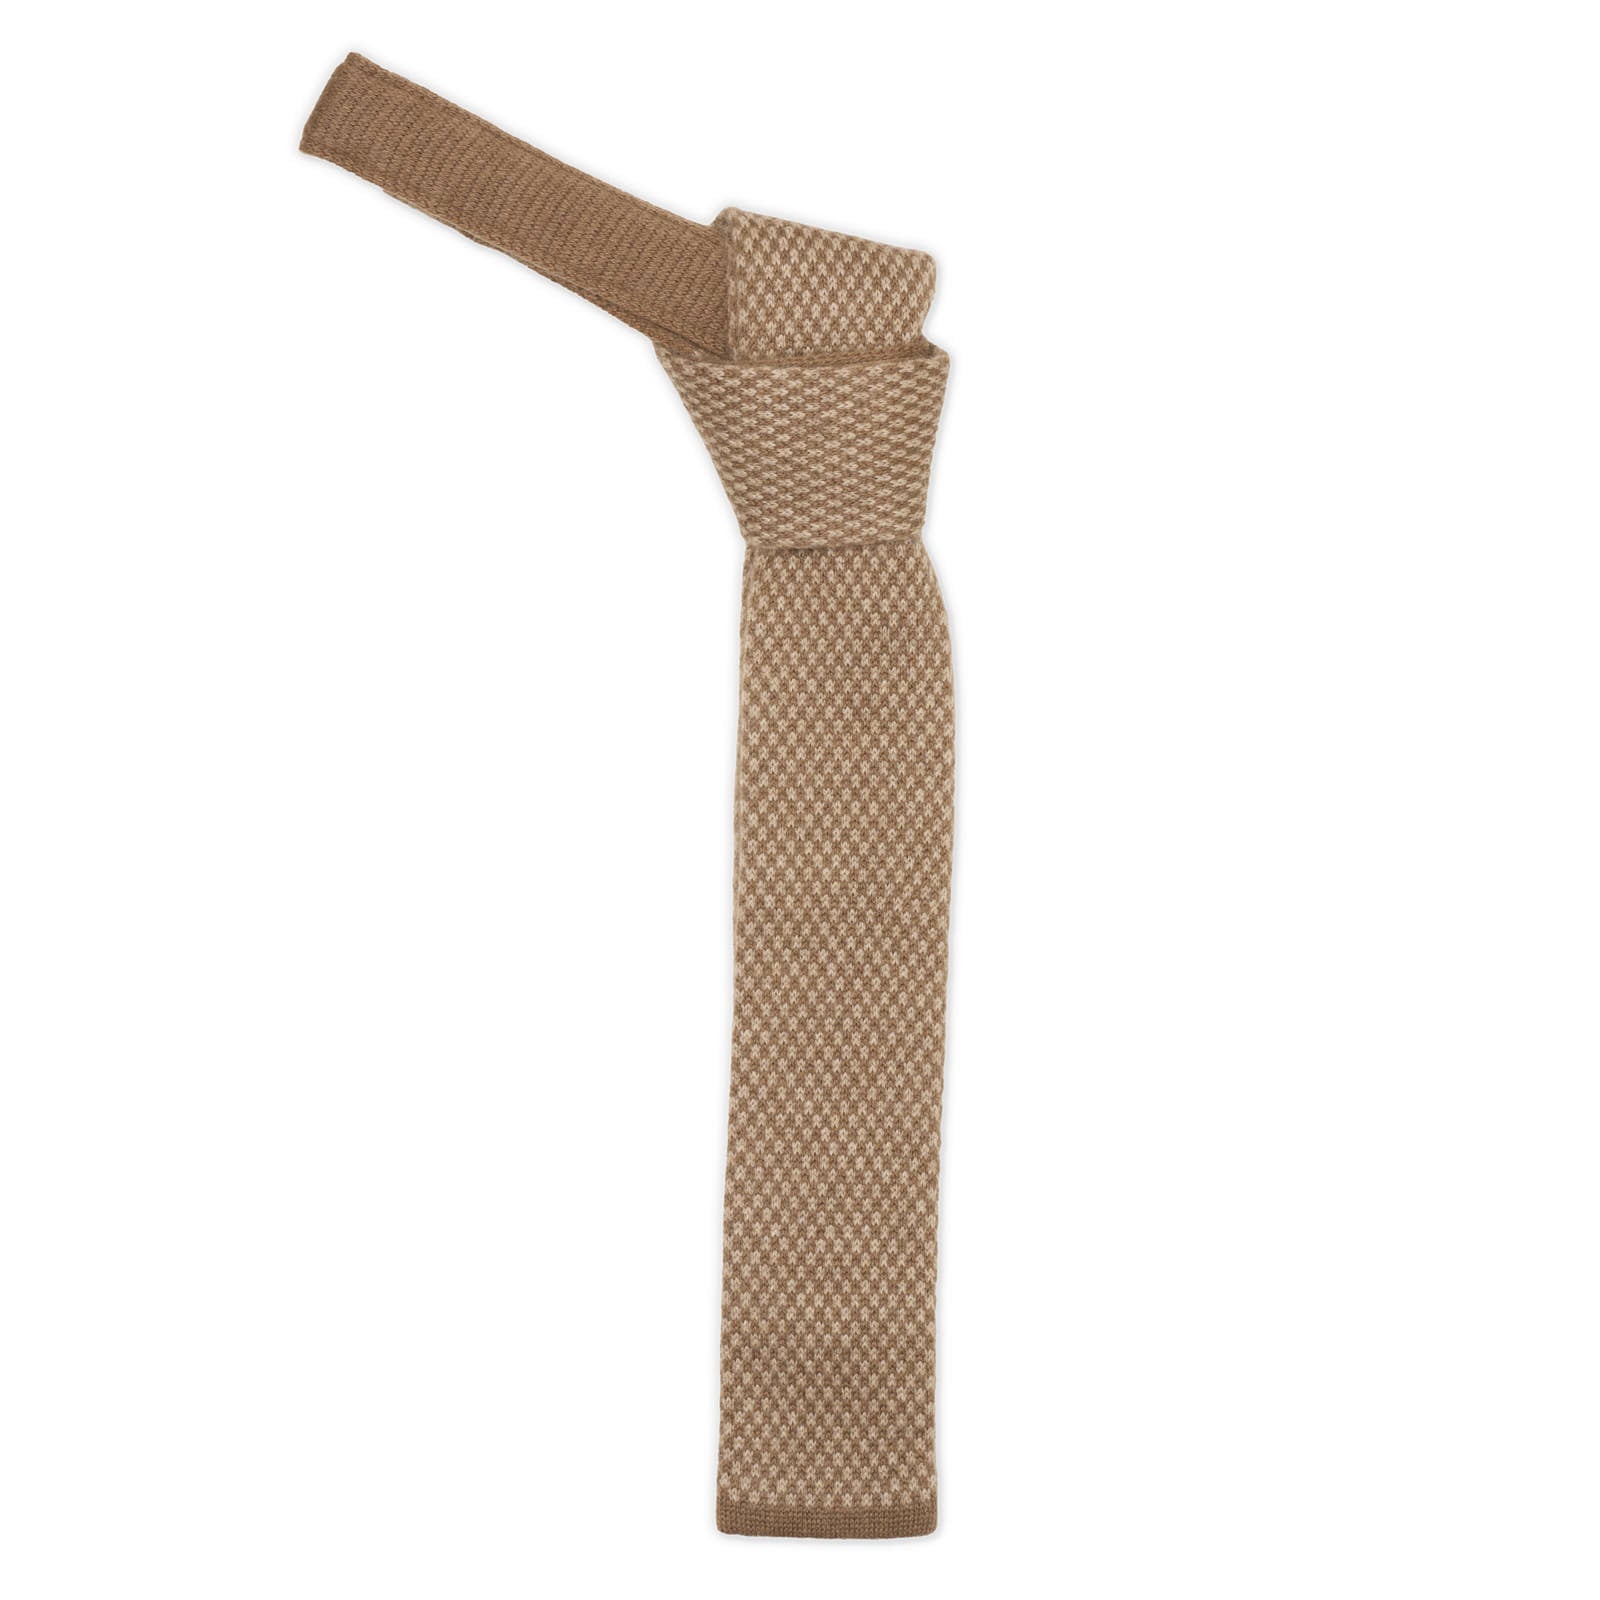 MATTABISCH FOR VANNUCCI Brown Micro Pattern Cashmere Knit Tie NEW